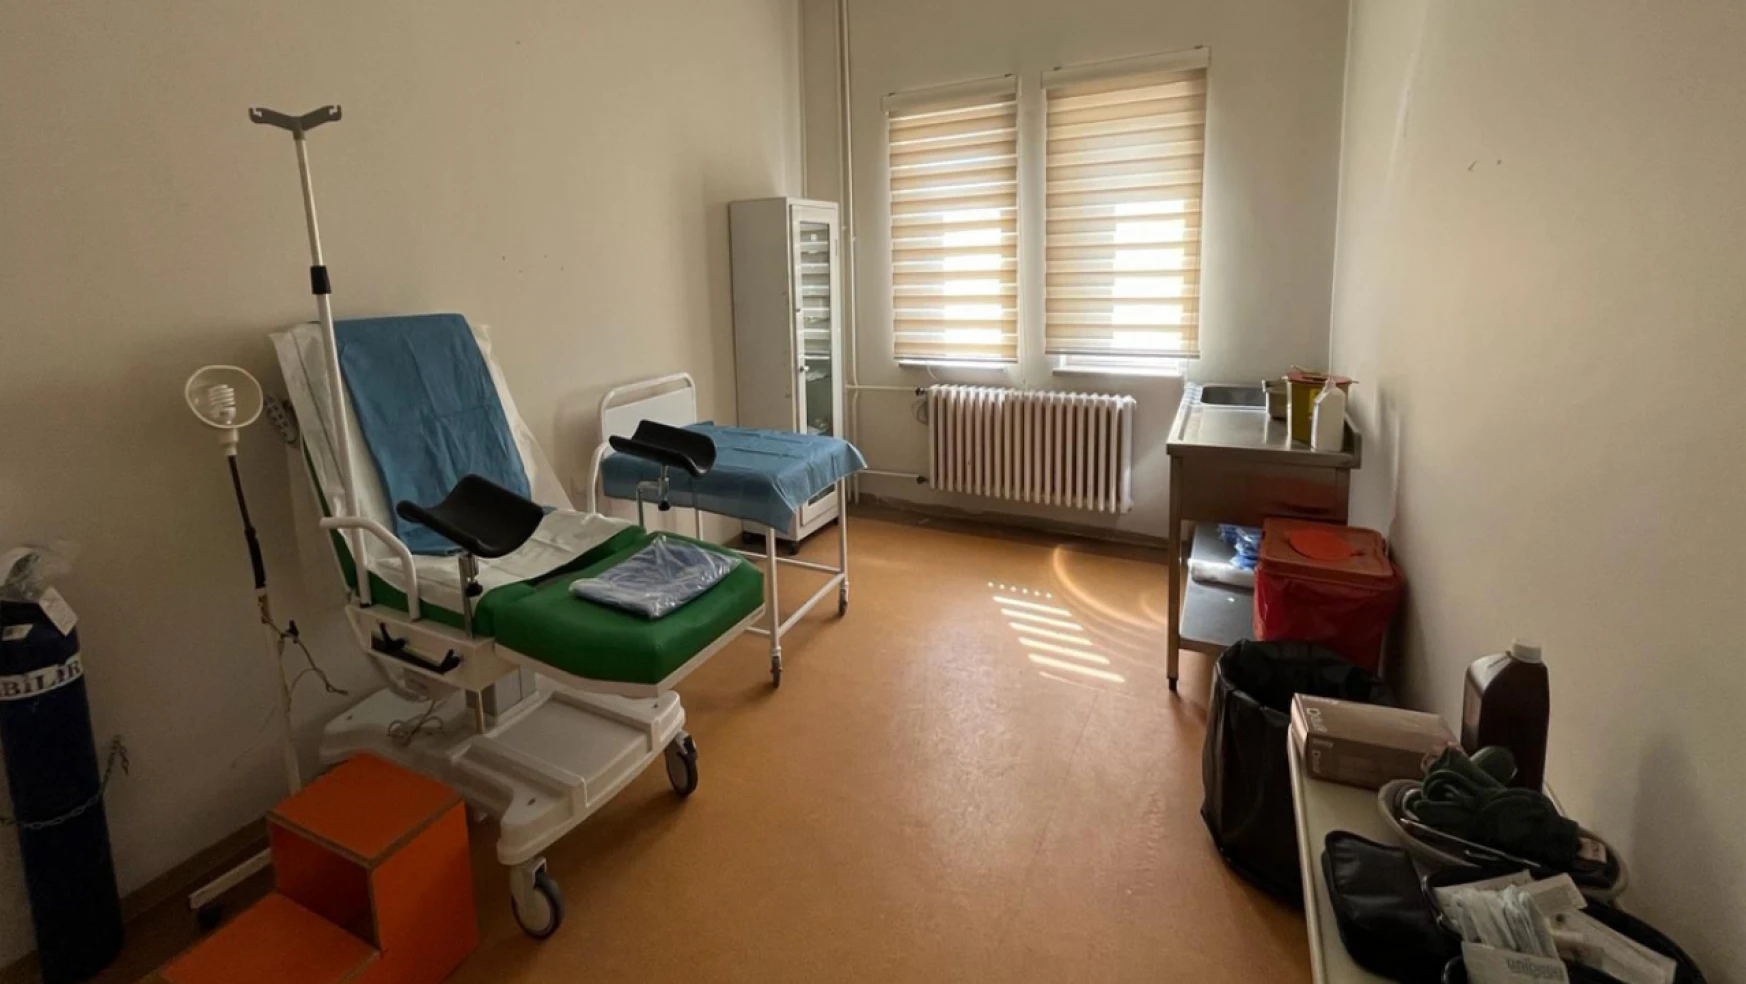 Şenpazar Devlet Hastanesi'nin Eksiklikleri Gideriliyor